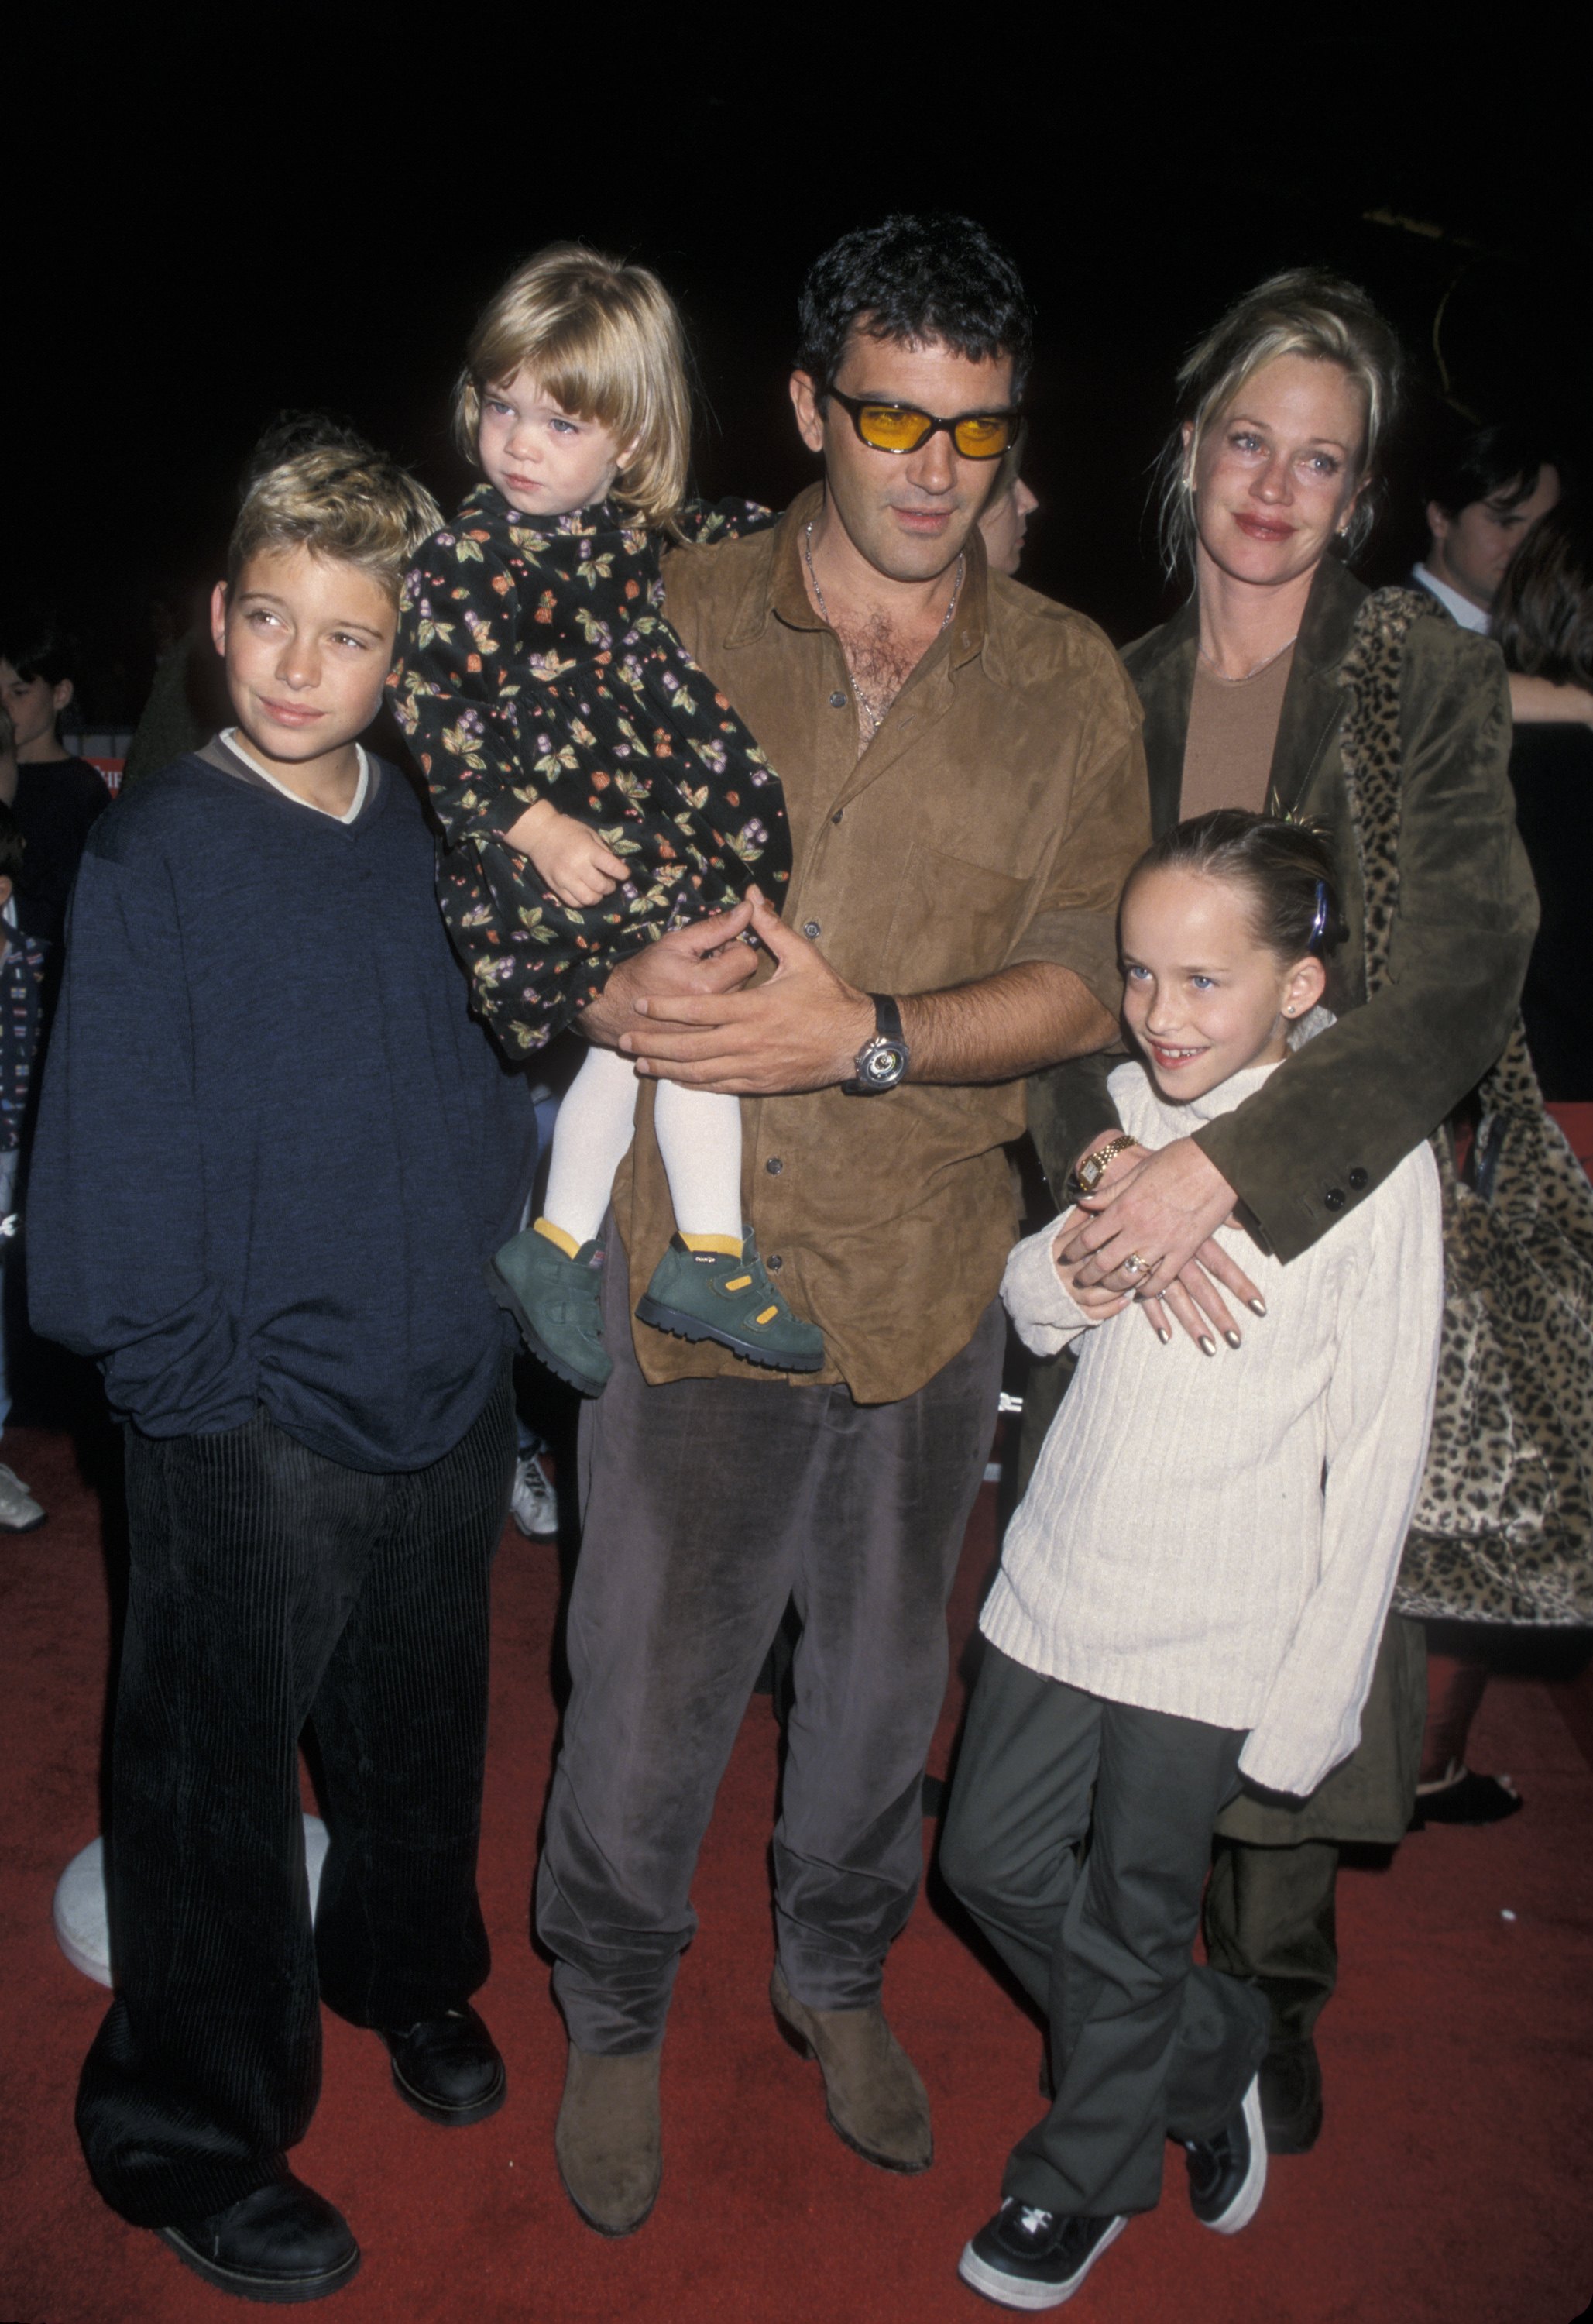 Antonio Banderas et Melanie Griffith avec leurs enfants Alexander Bauer, Stella Banderas et Dakota Johnson à Los Angeles en 1998 | Source : Getty Images